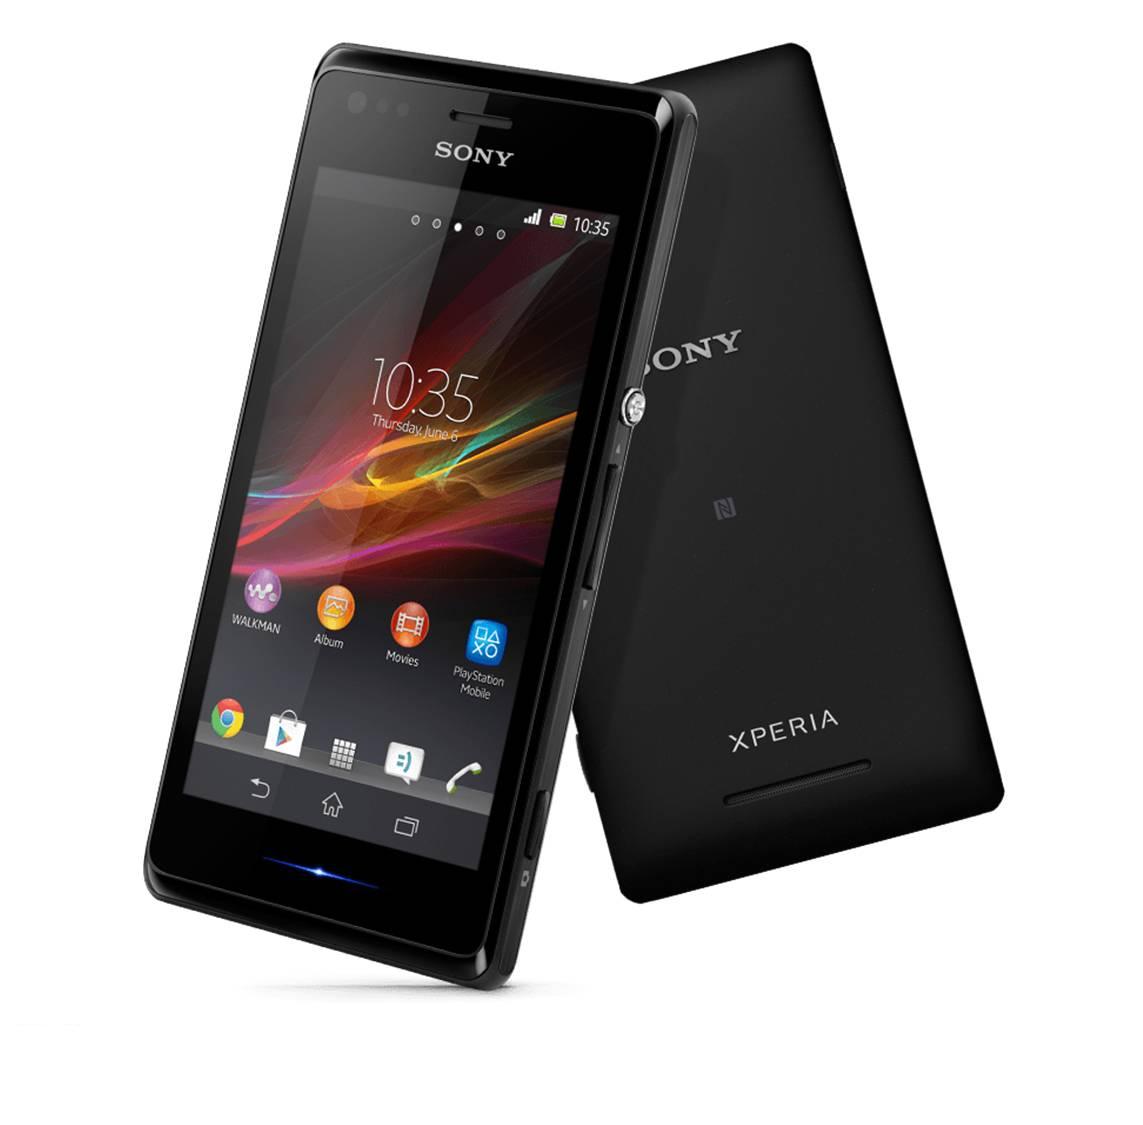 Sony xperia m. Sony Xperia c1905. Sony Xperia m c1905. Sony Xperia c2005. Sony Xperia m3.